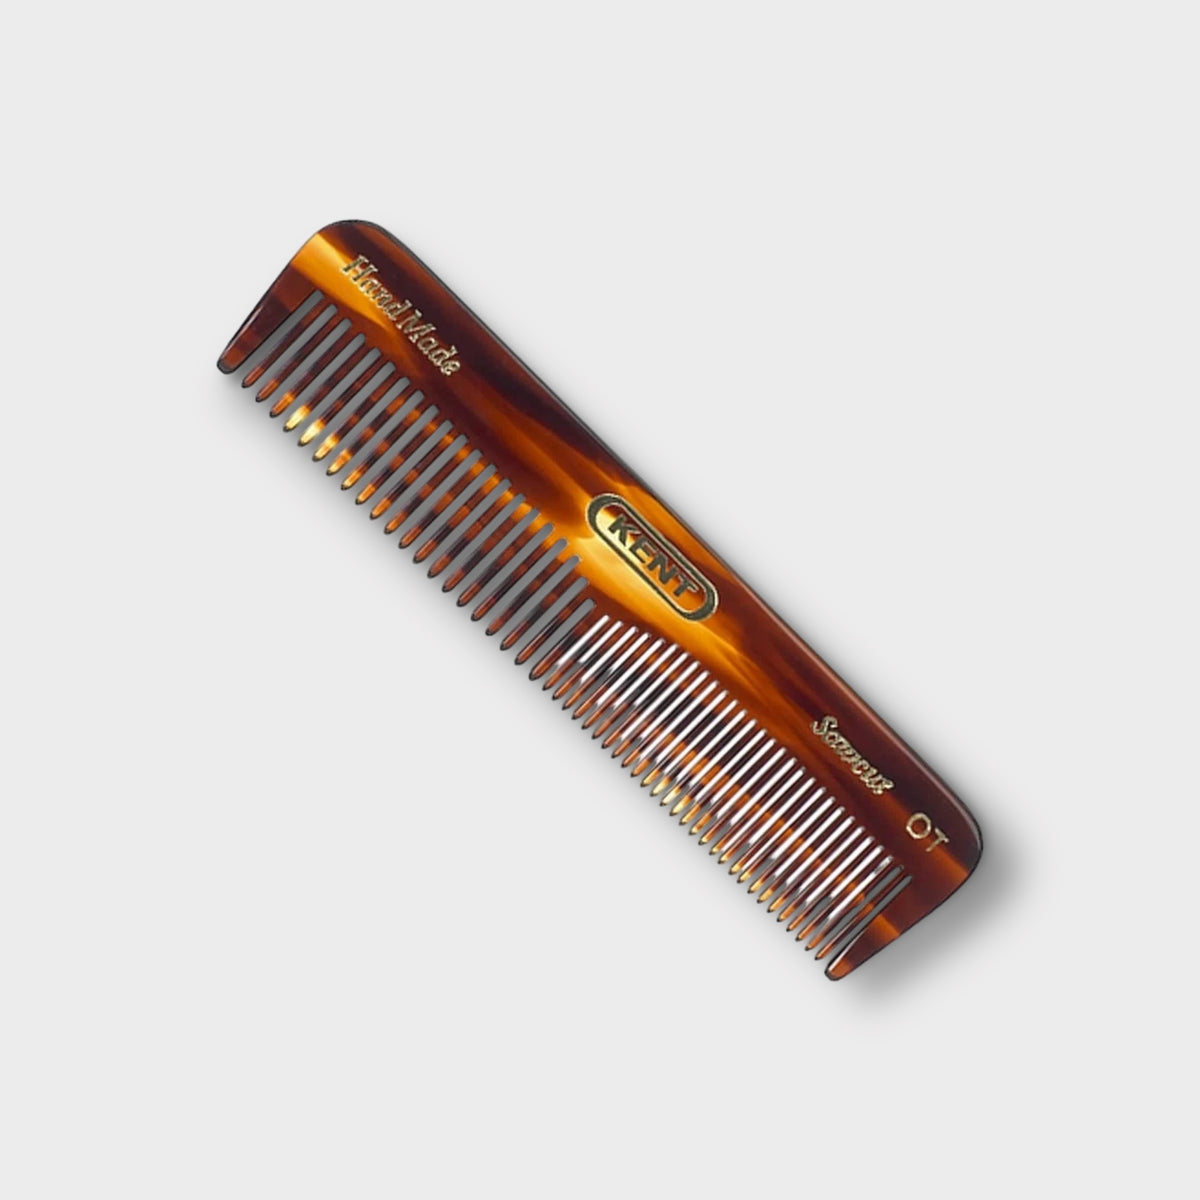 Kent pocket comb